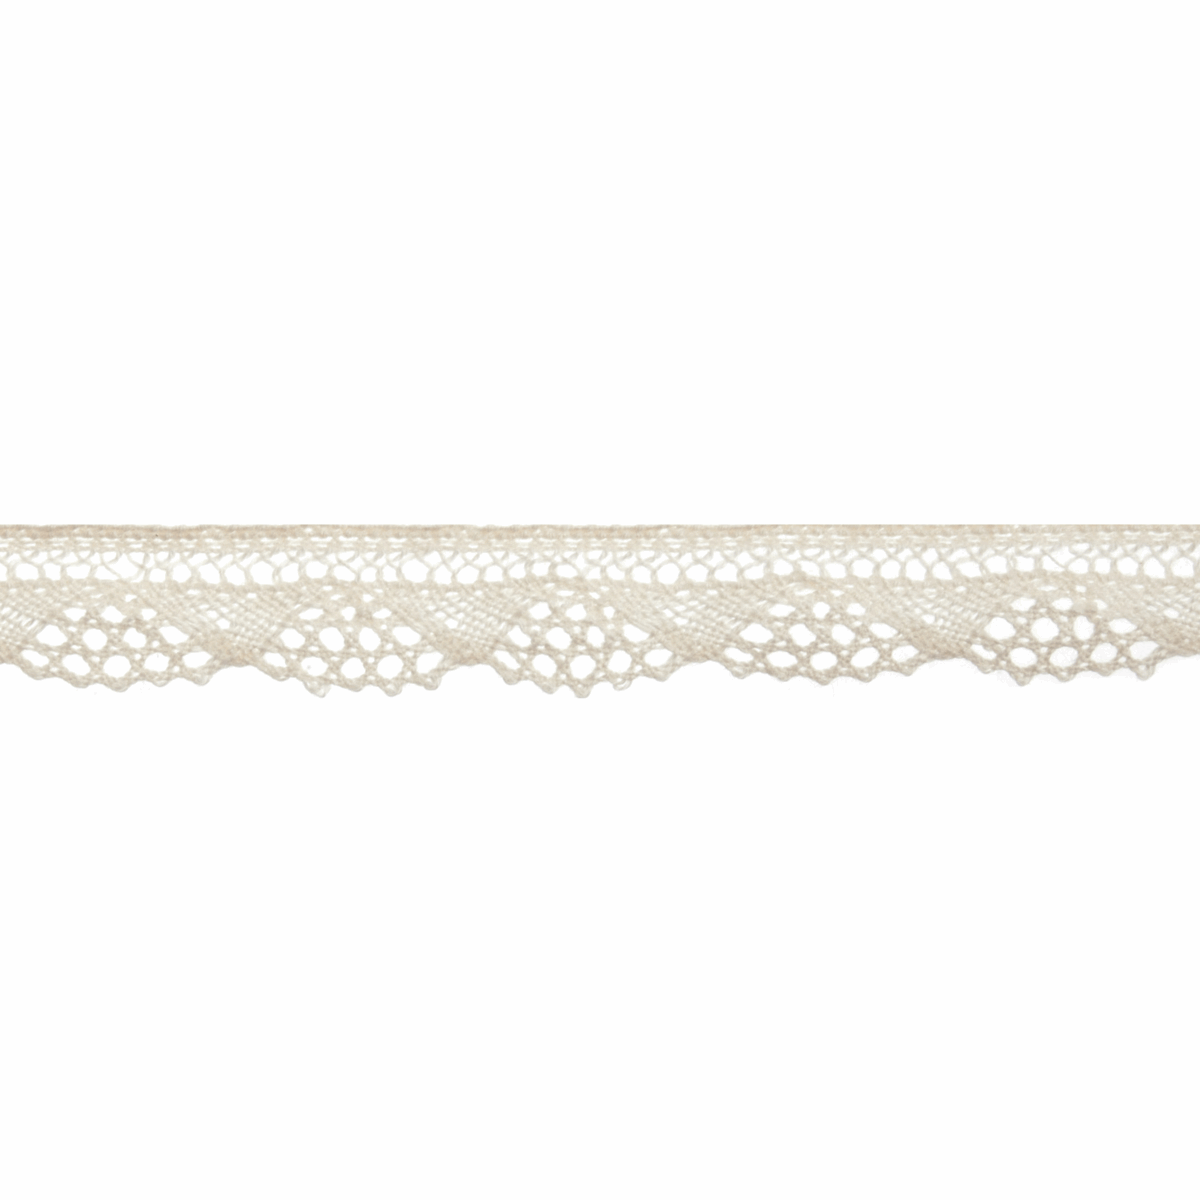 Bowtique Cream Cotton Lace - 5m x 12mm